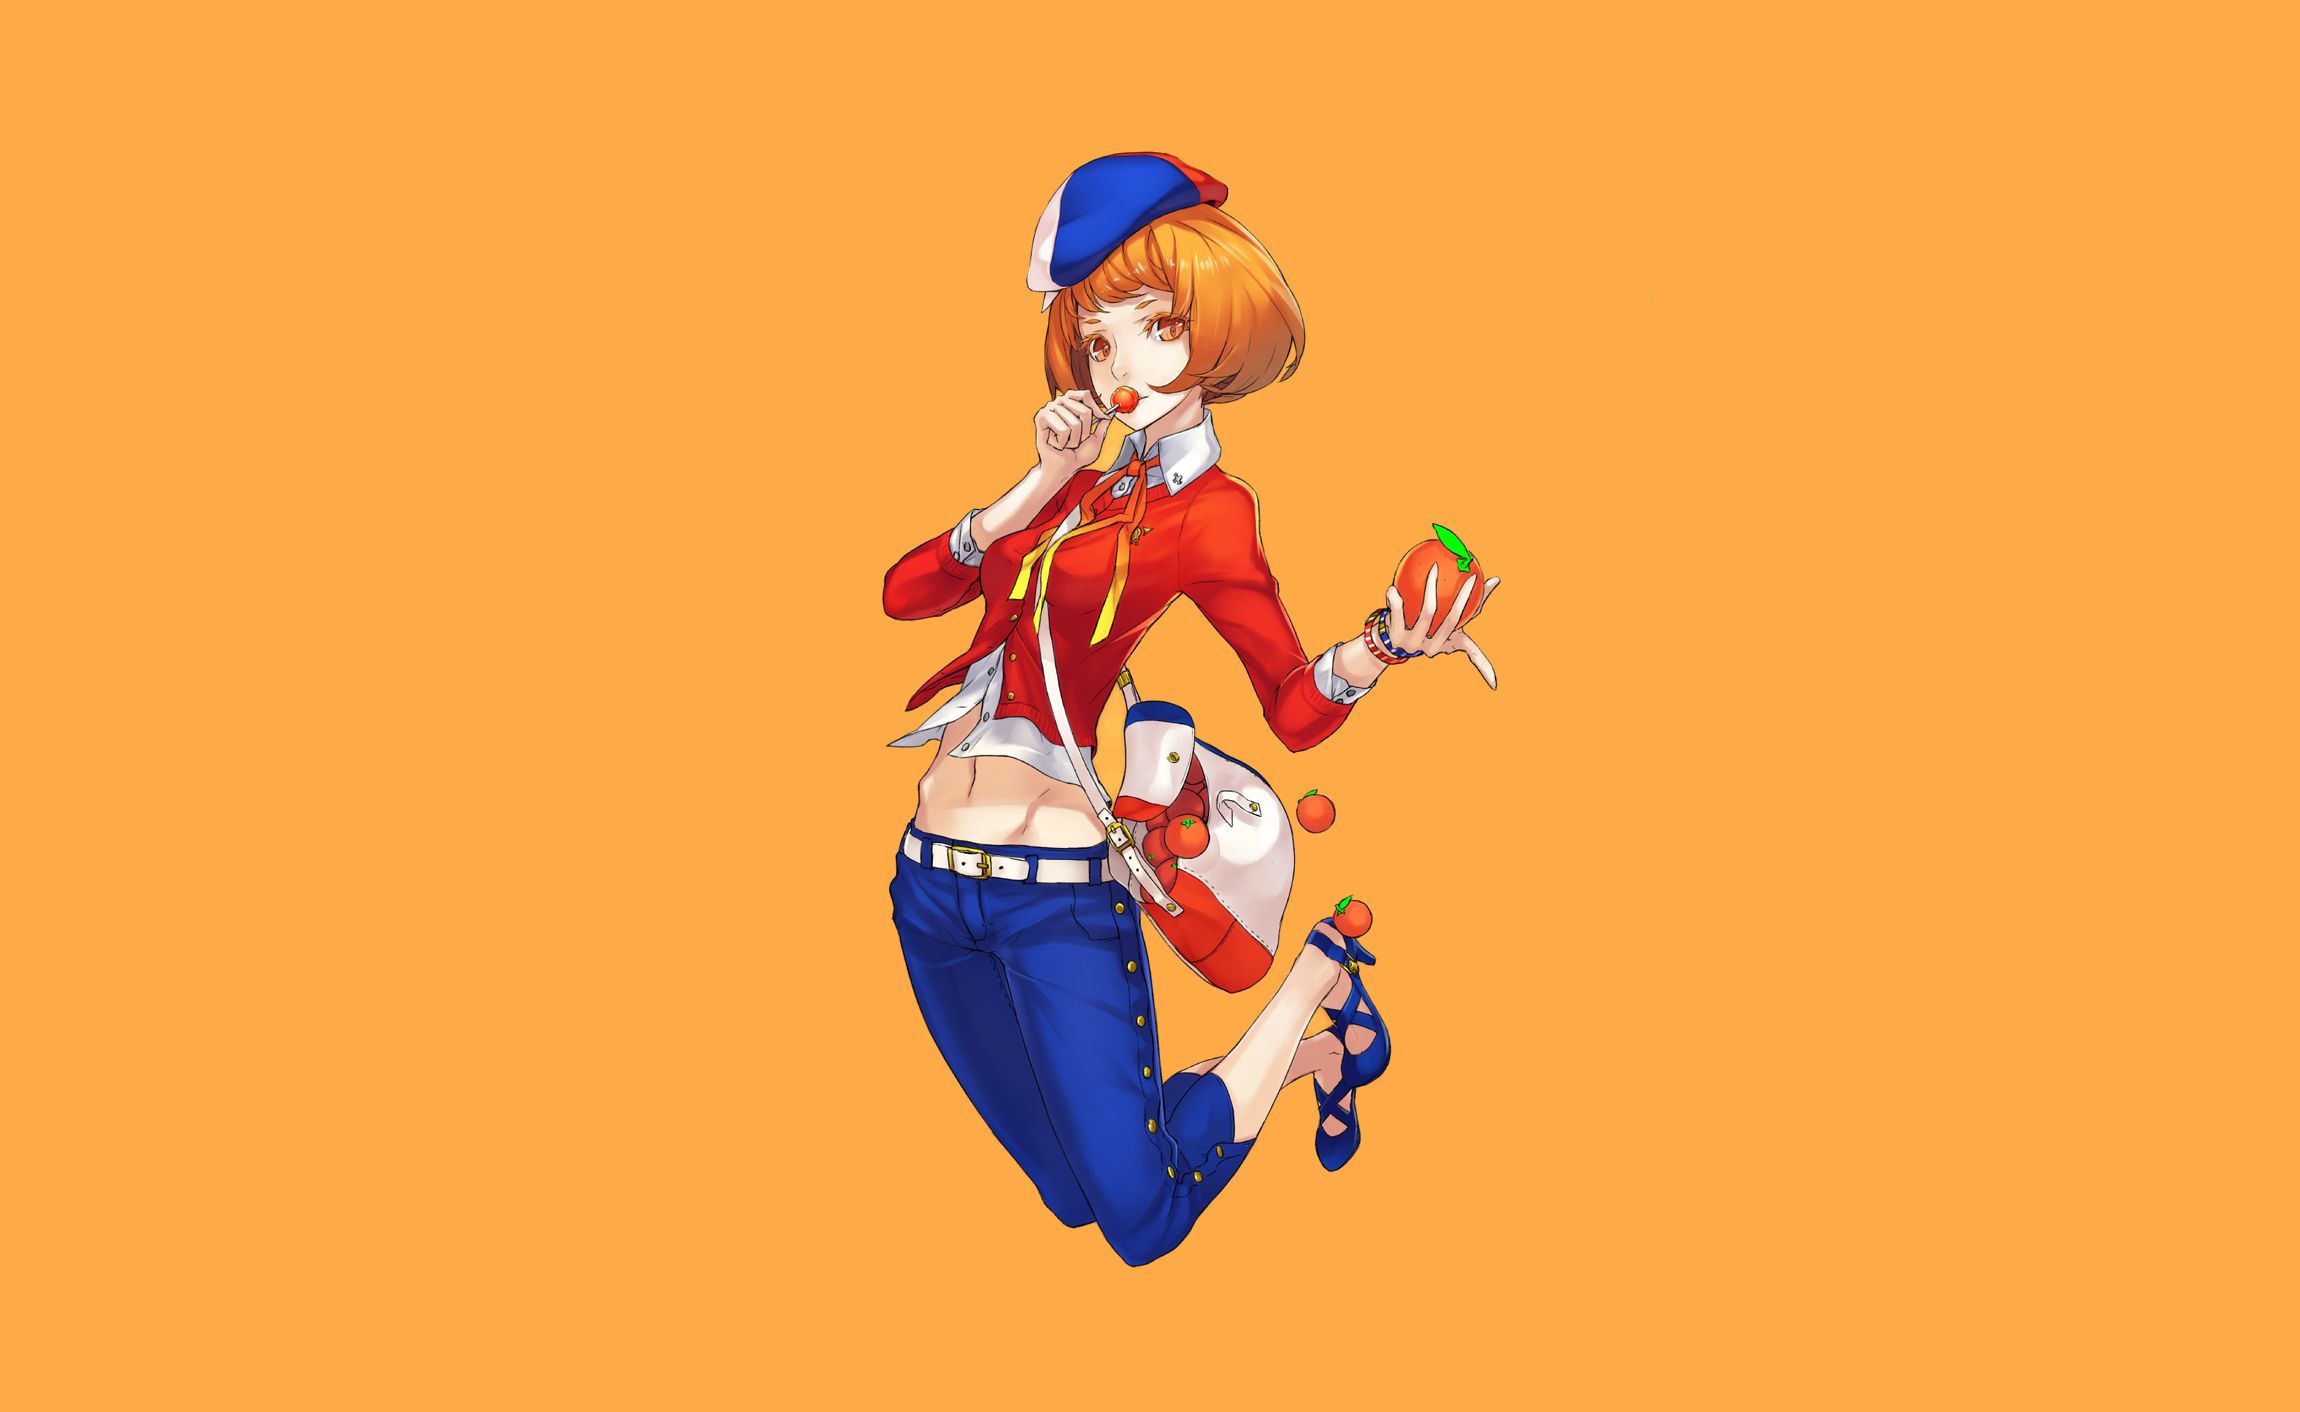 Anime Girl & Sunset Wallpapers - Anime Aesthetic Wallpapers 4k